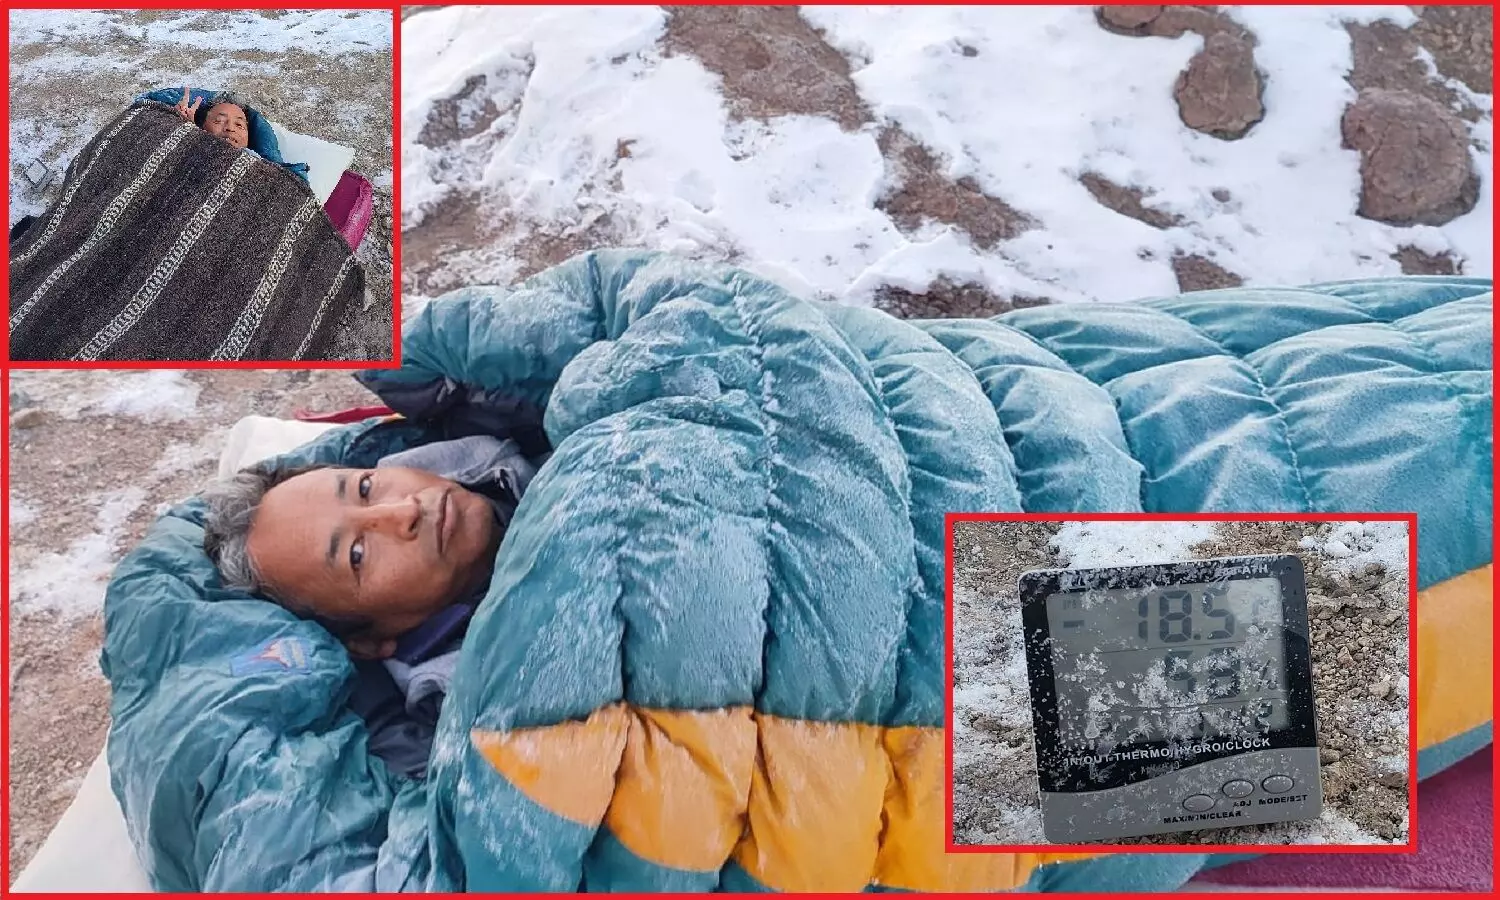 Sonam Wangchuk : थ्री इडियट्स के रेंचो -18 डिग्री तापमान में कर रहे हैं अनशन, वजह जानकर होगा ताज्जुब